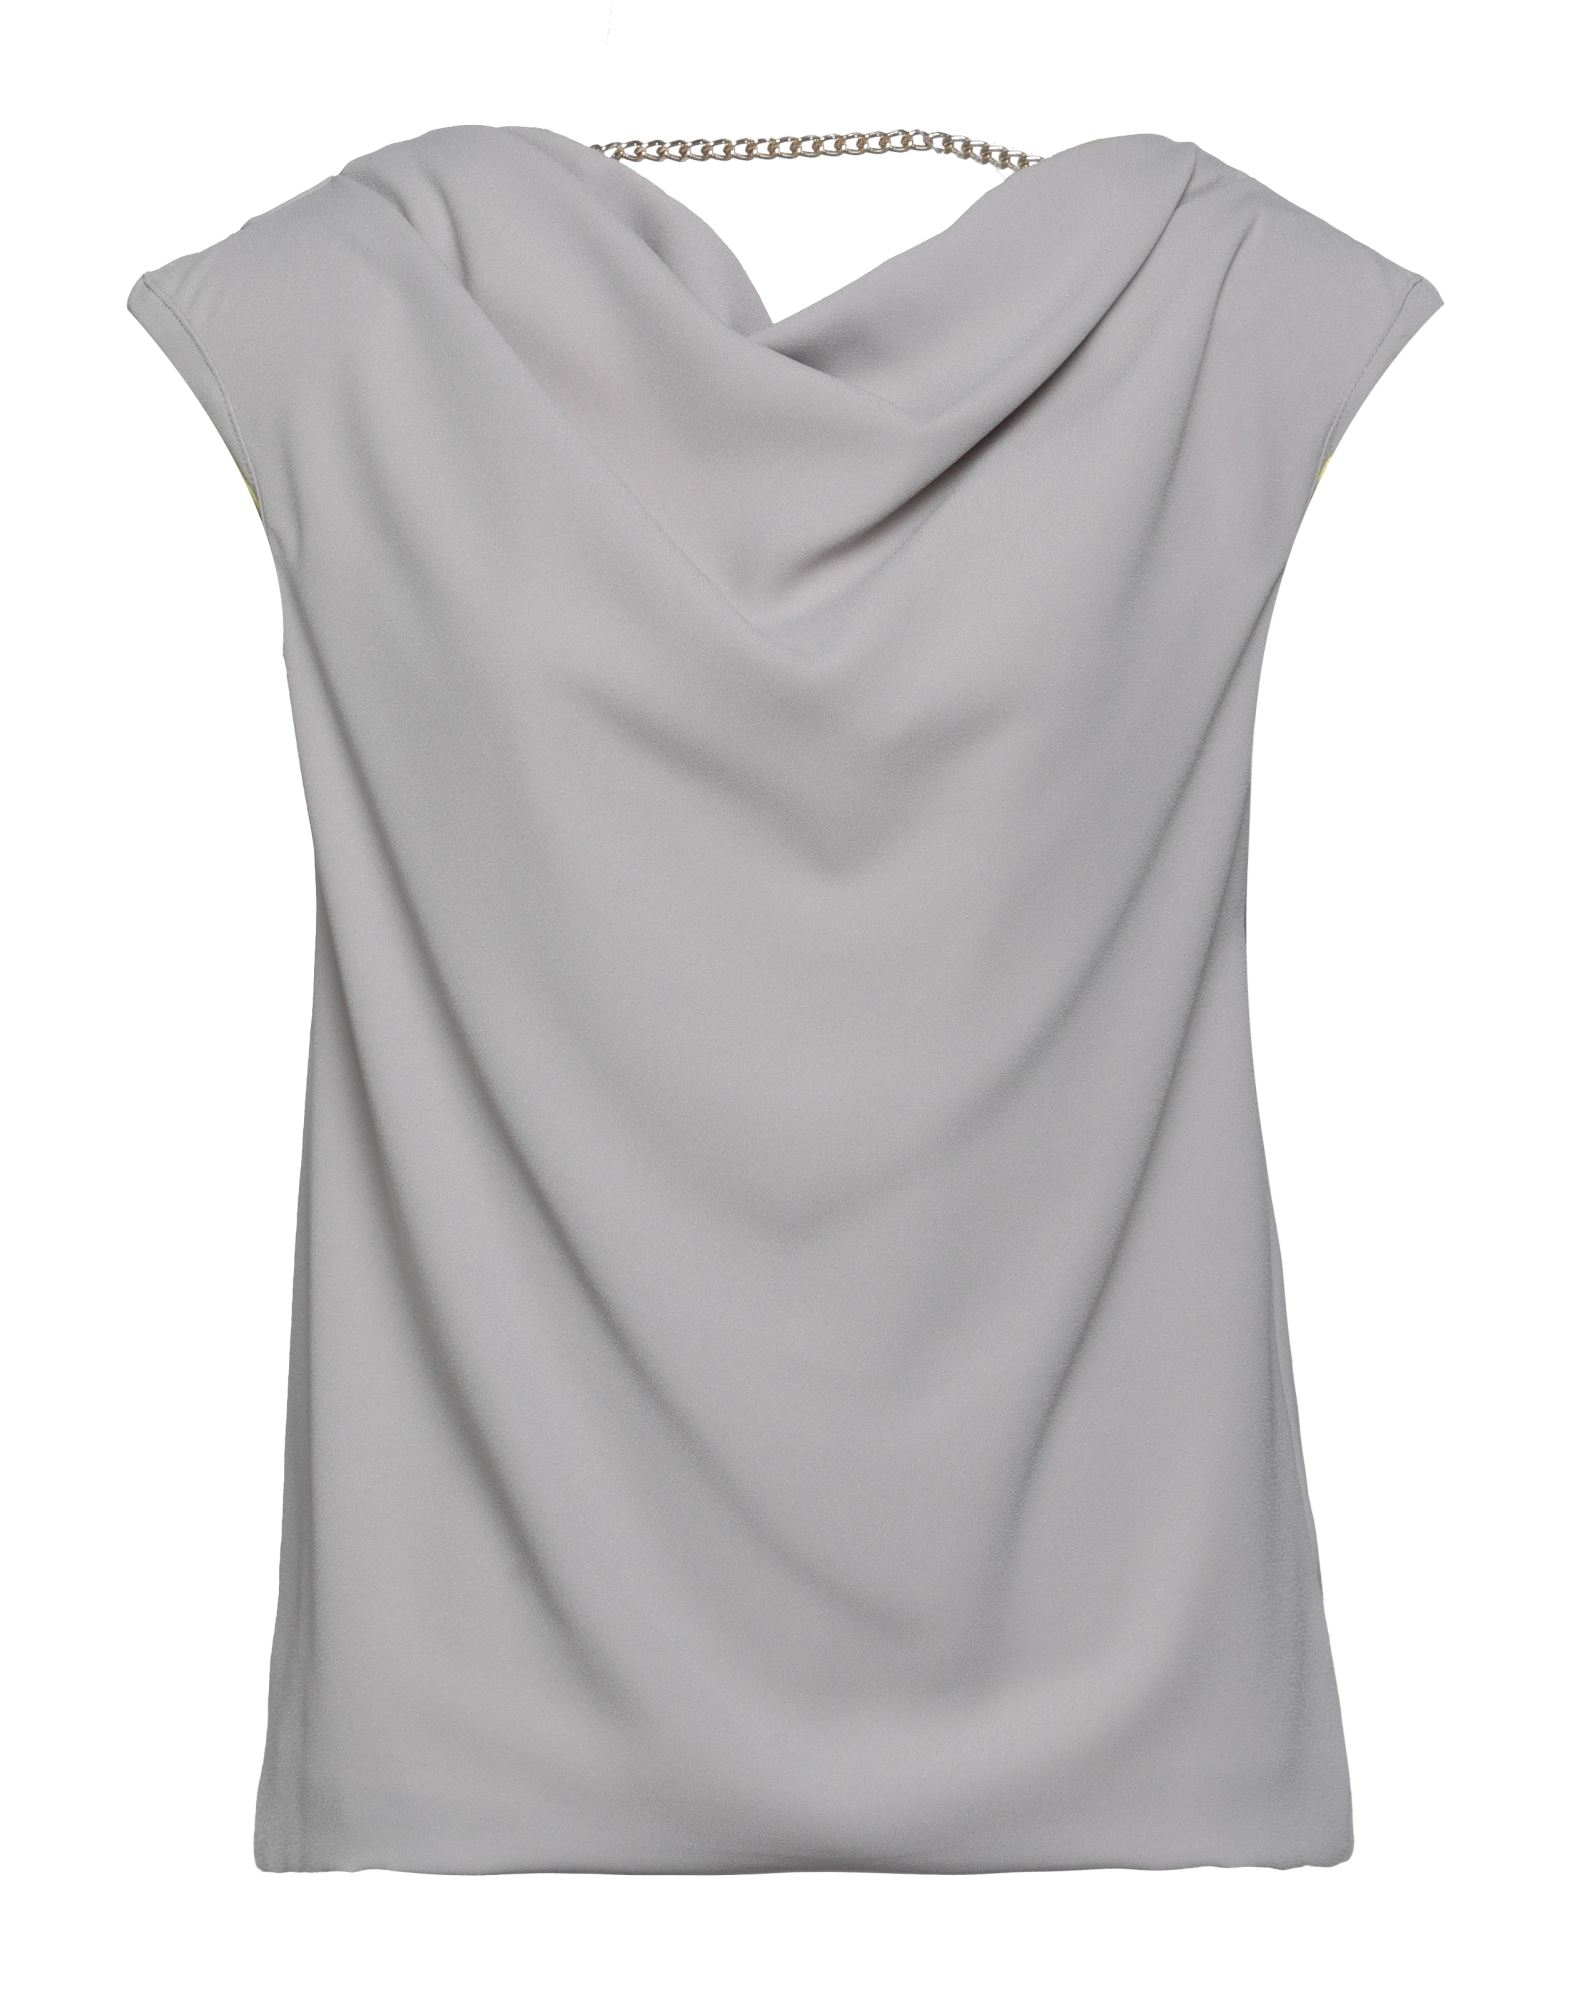 Les Bourdelles Des Garçons Woman Top Grey Size 8 Polyester